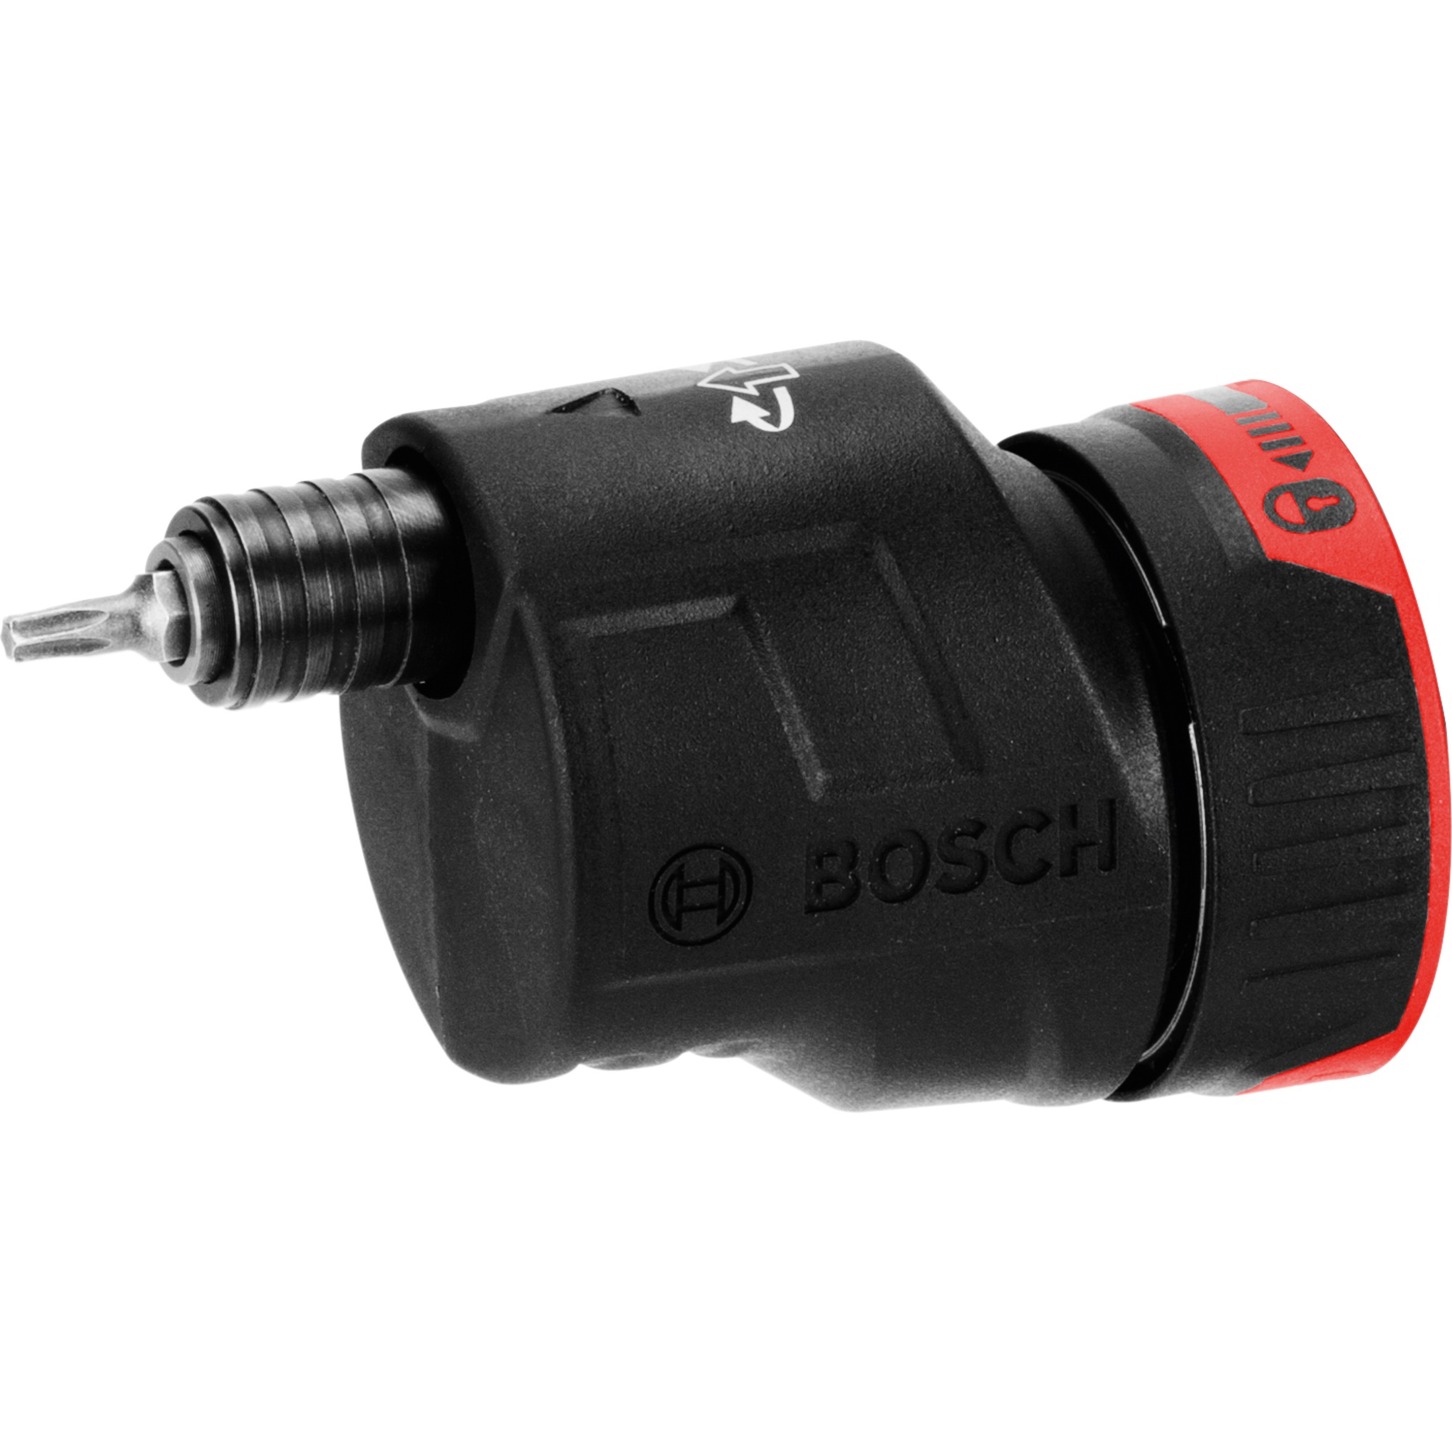 Exzenteraufsatz GEA FC2 Professional, Adapter von Bosch